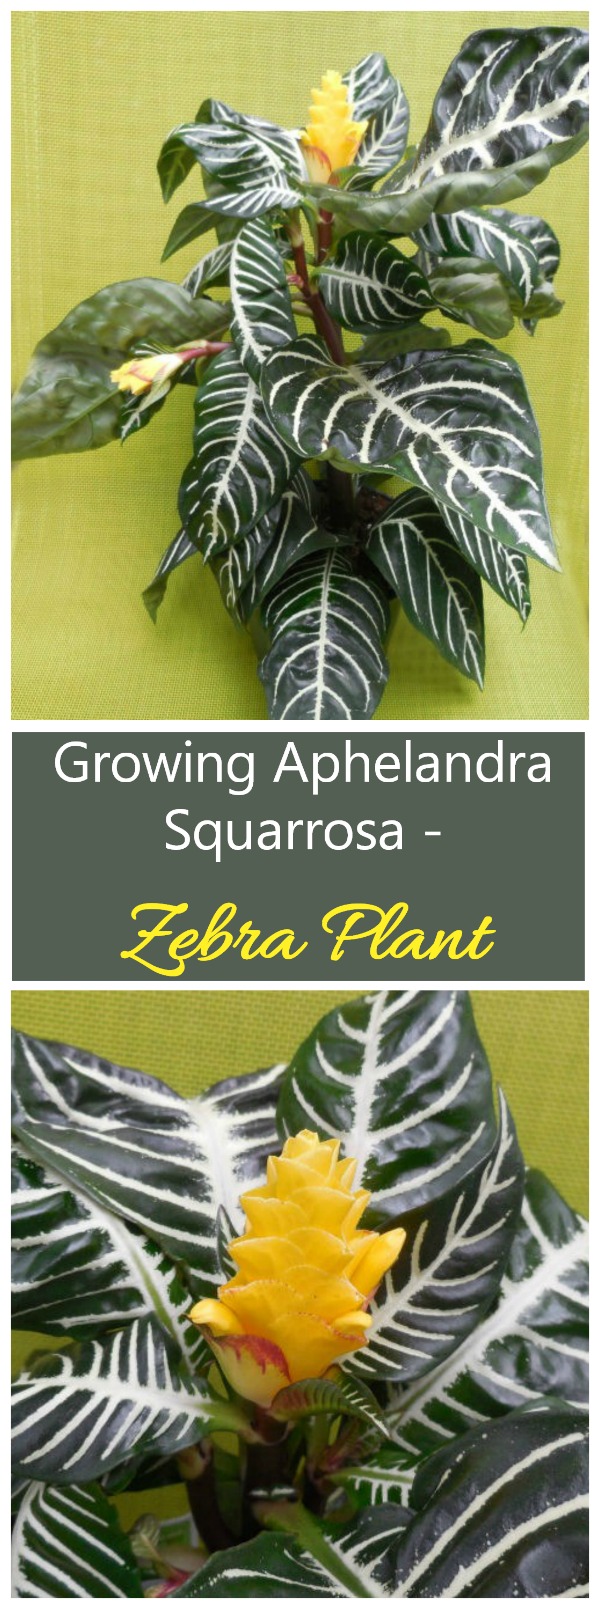 ゼブラ植物 - アフェランドラ・スクアローサの栽培の秘訣